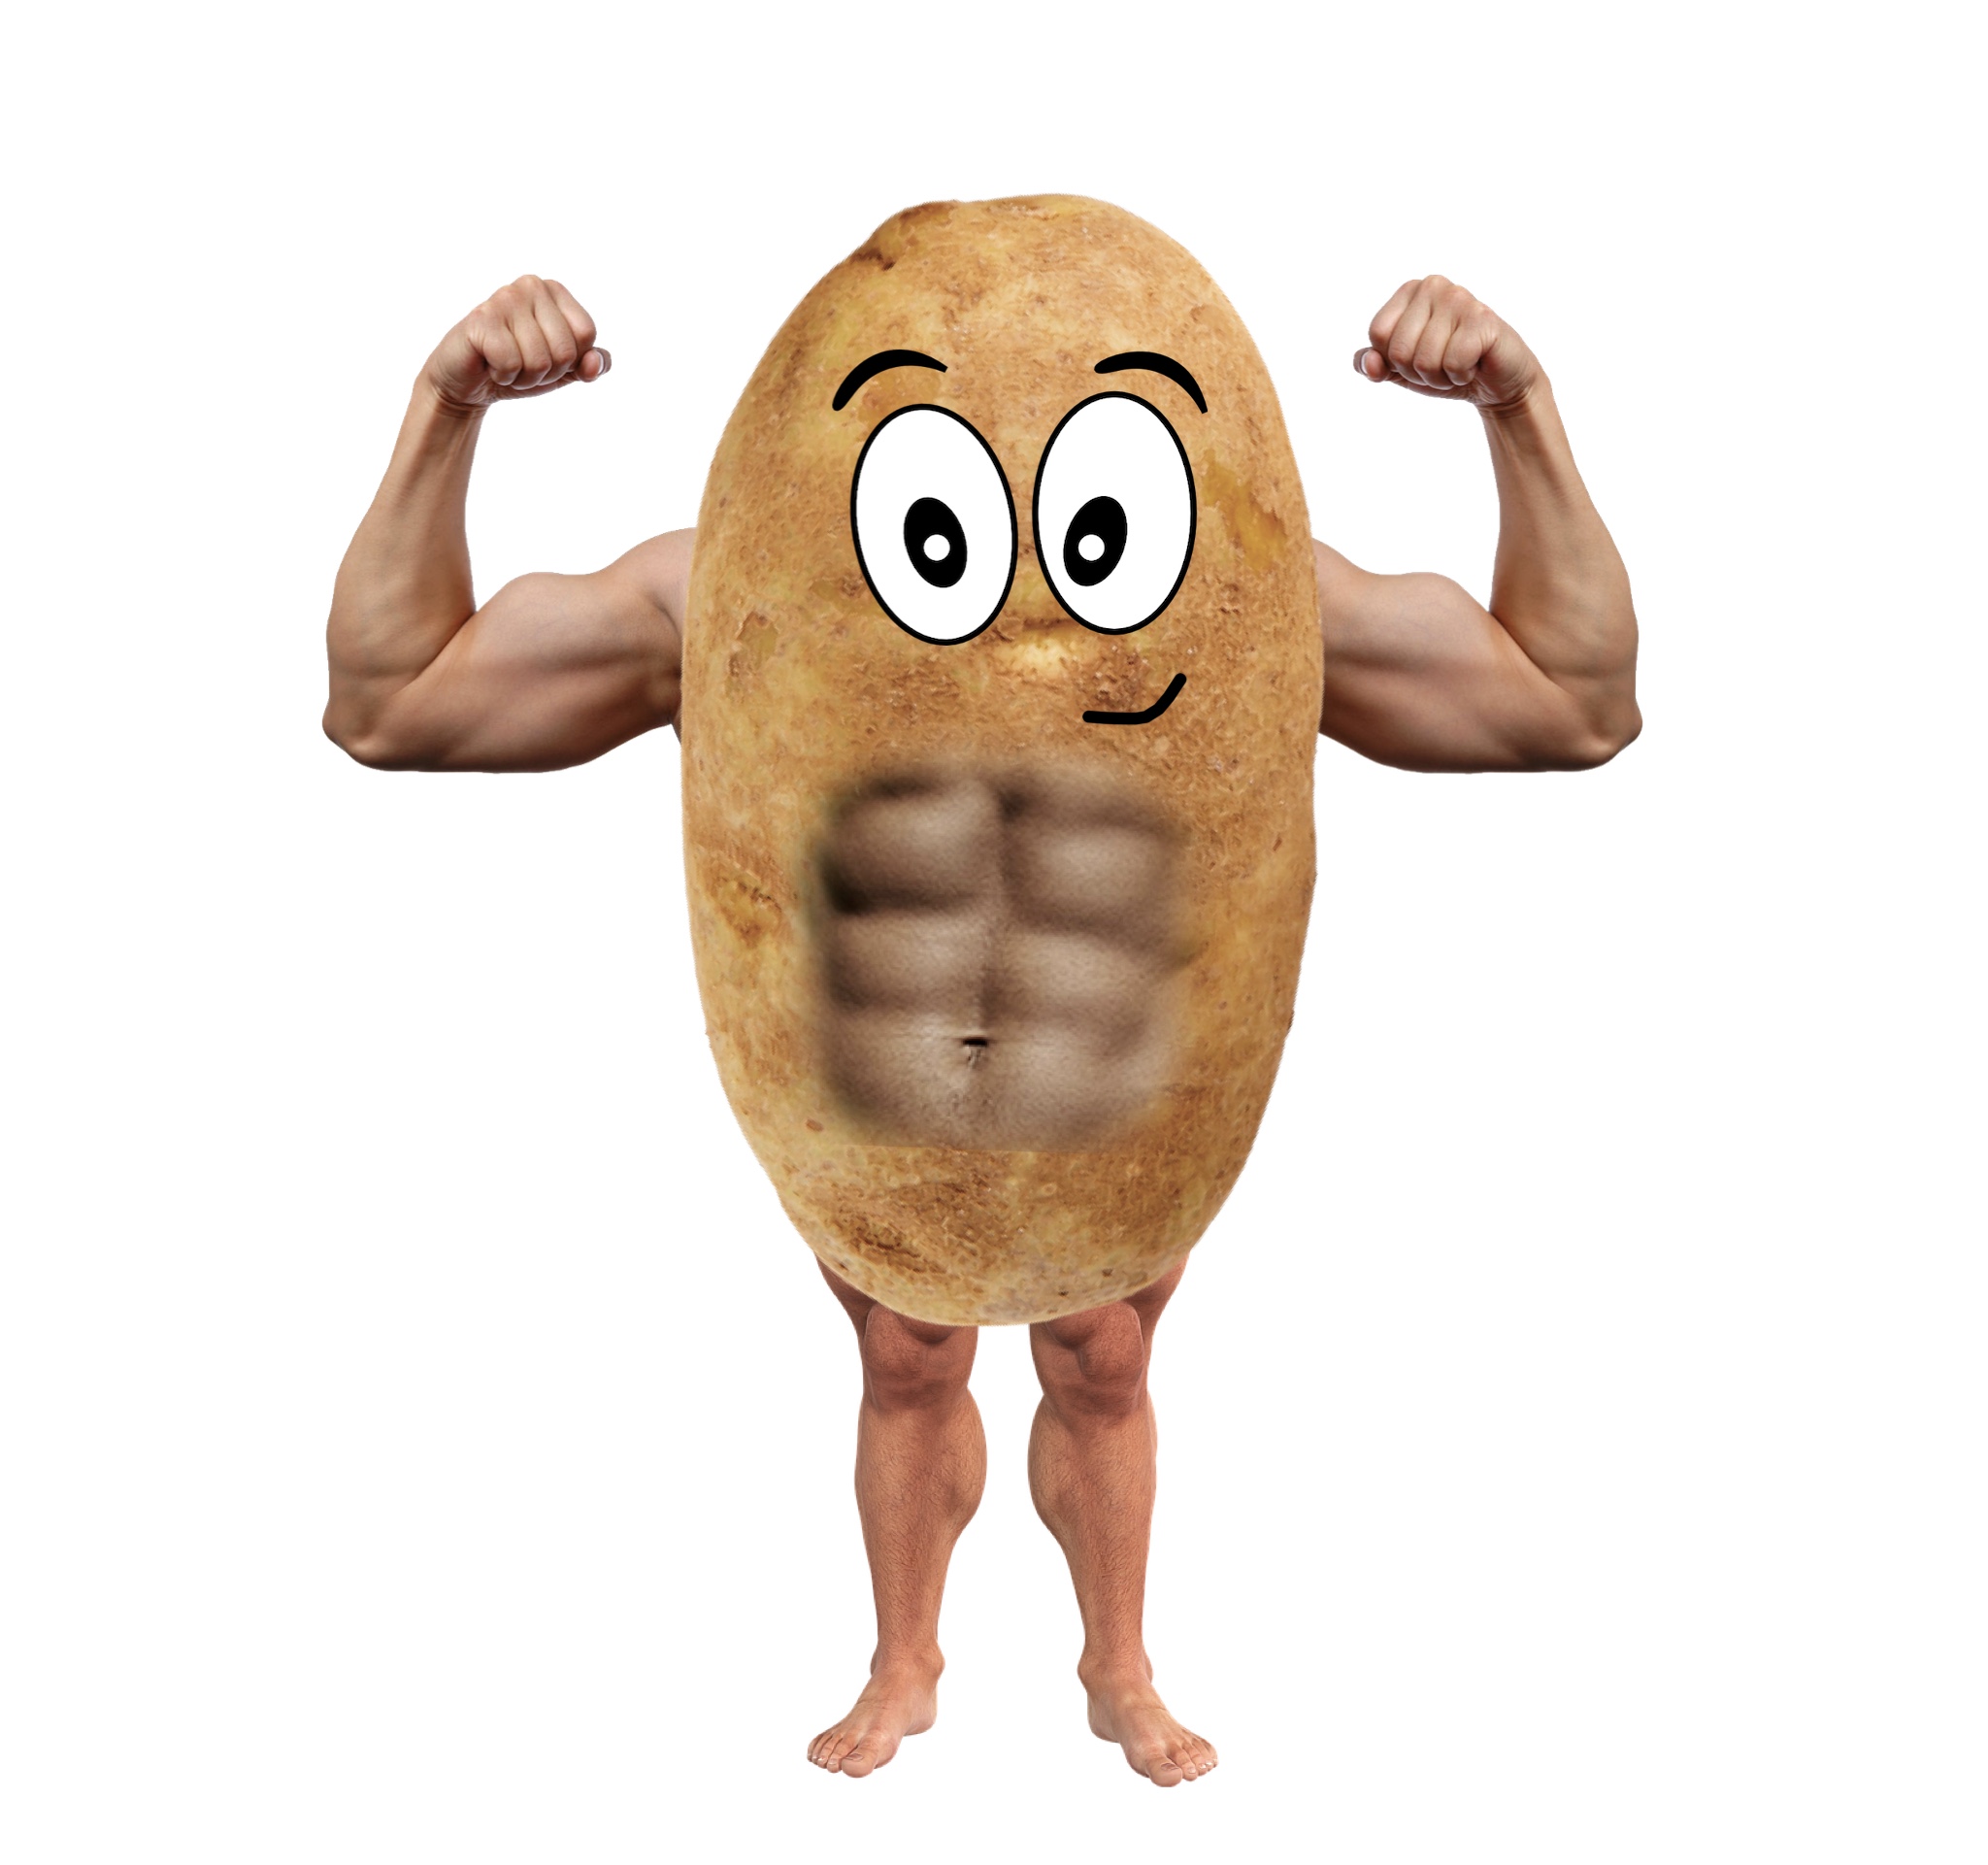 Ripped potatoman